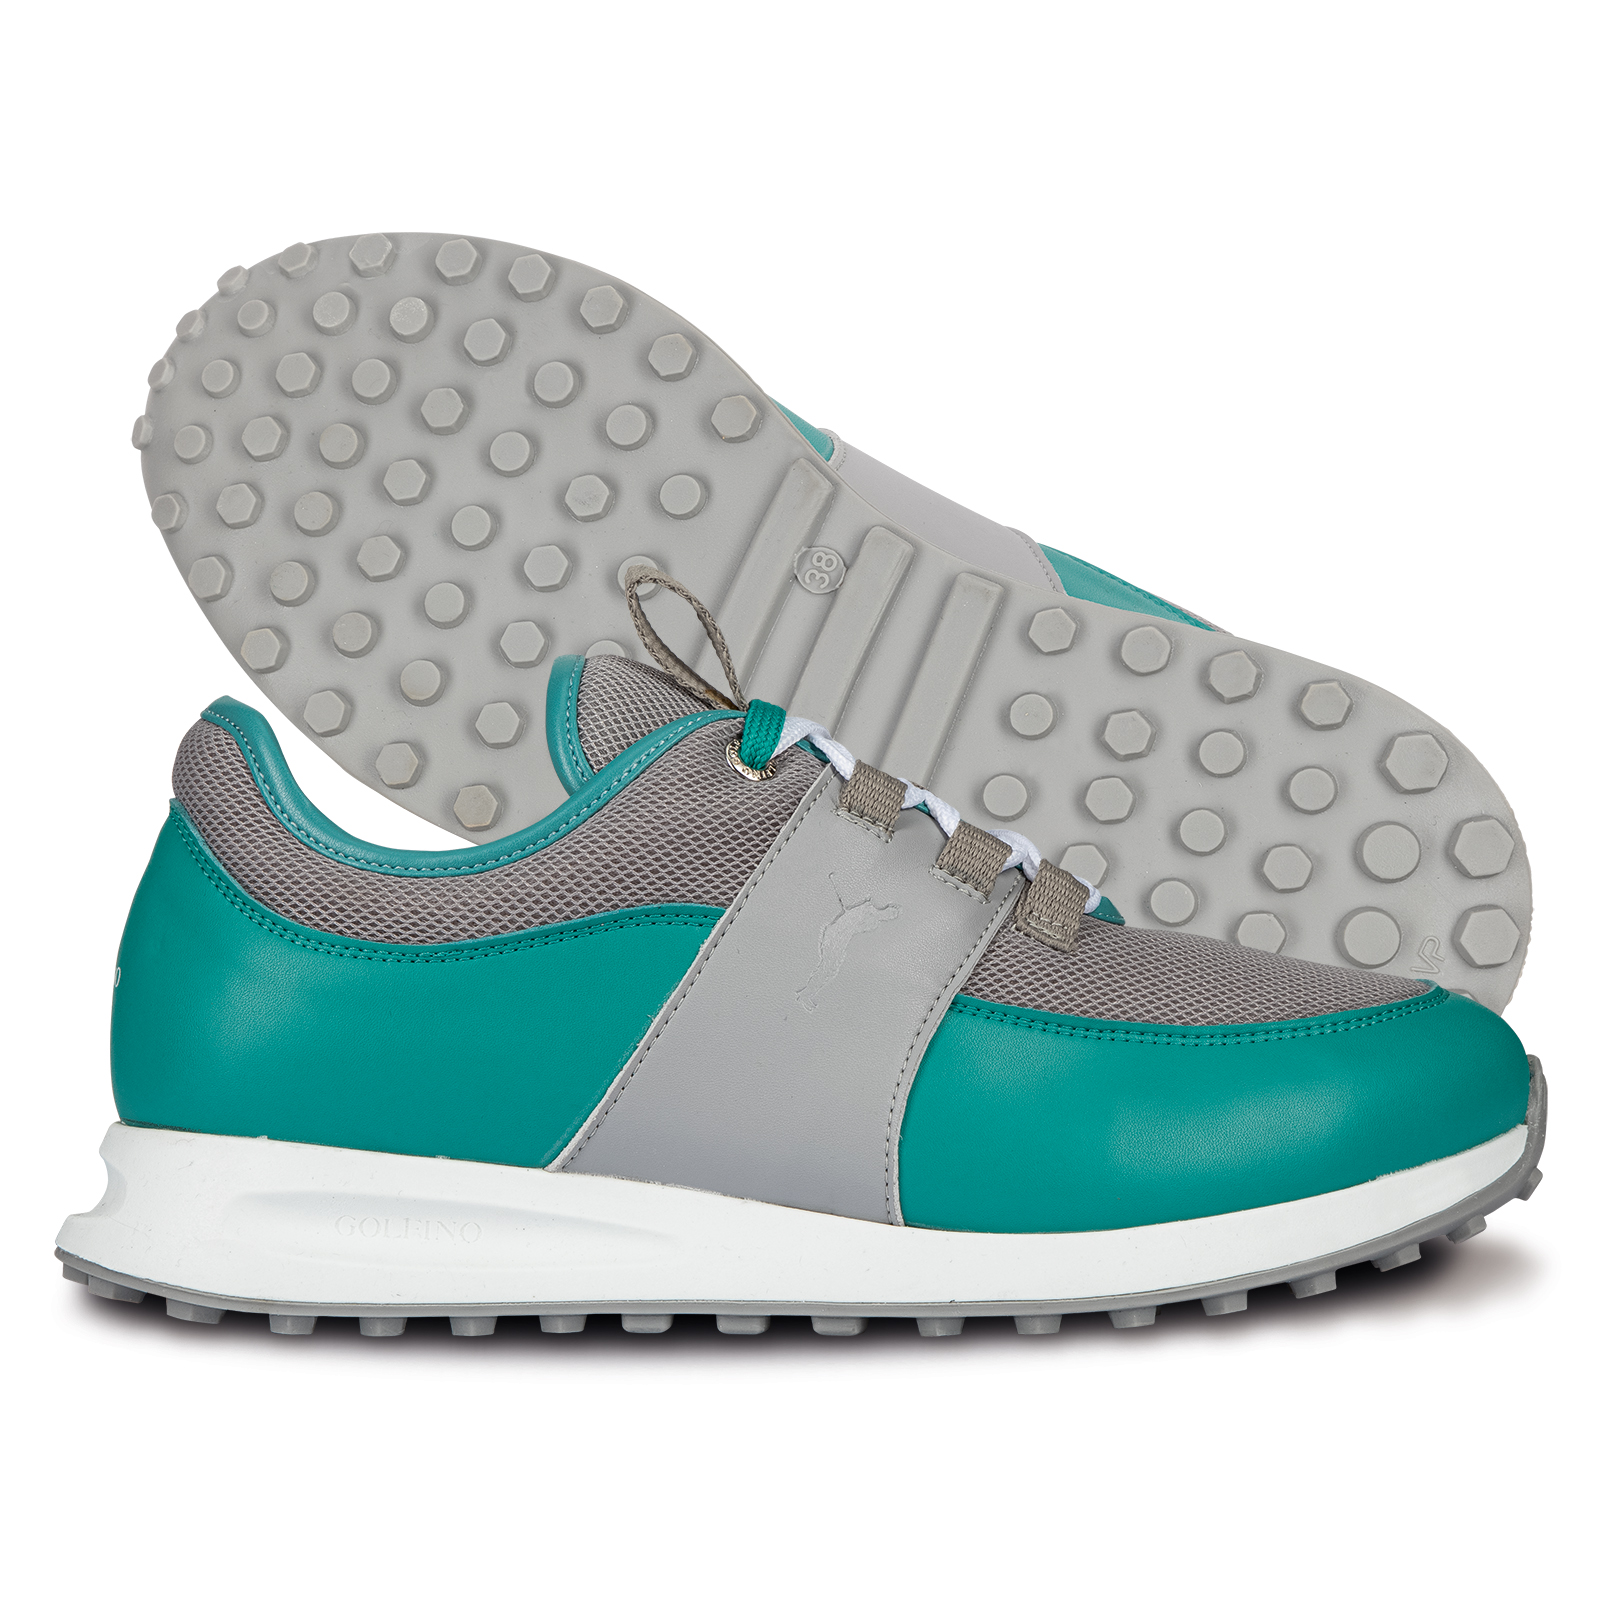 Atractivos zapatos de golf con inserción de malla para mujer